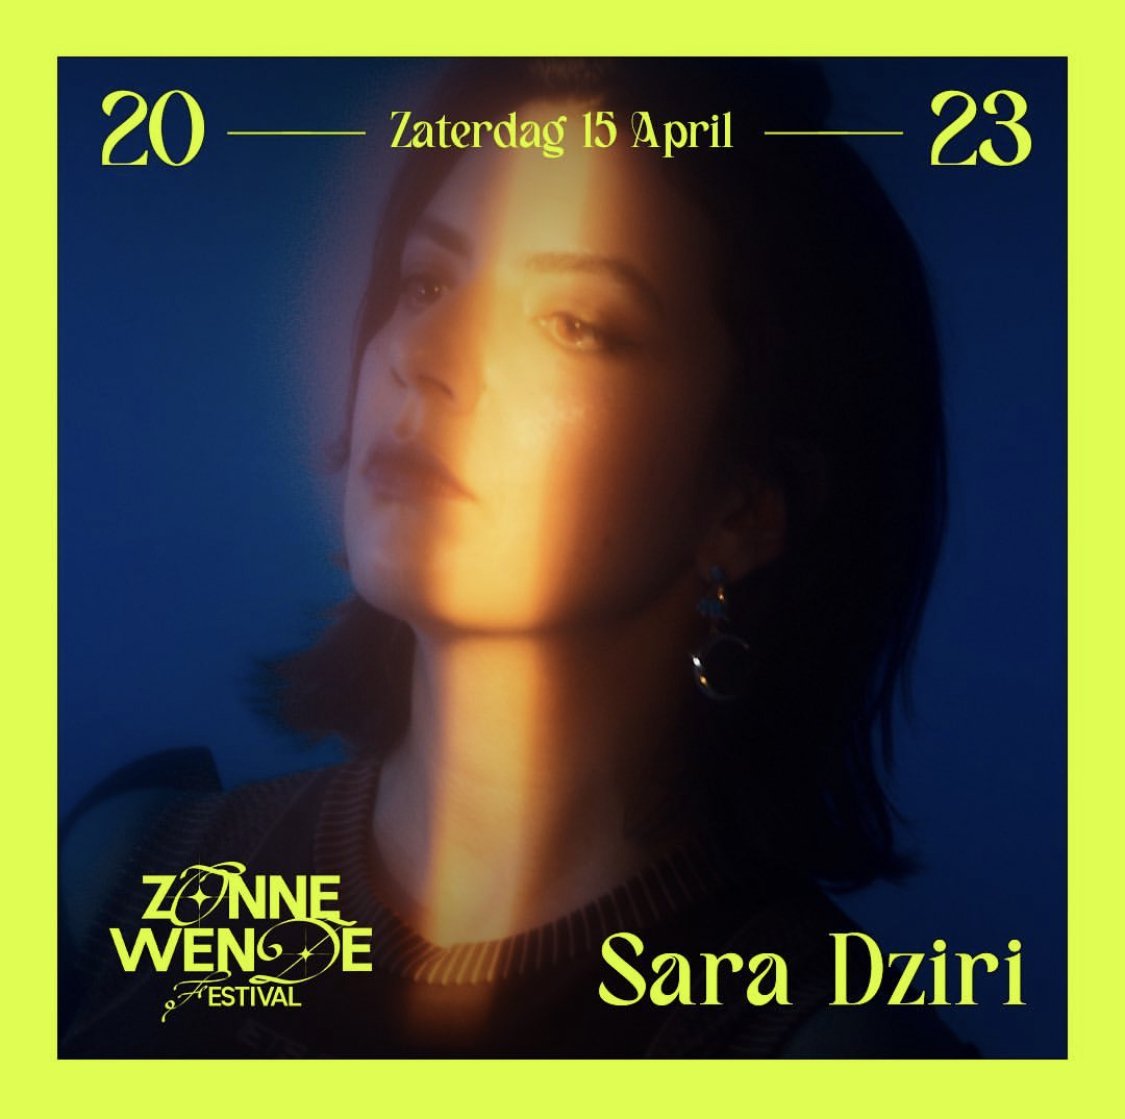 Promo  van Sara Dziri en Zonnewende Festival 2023, in opdracht van Zonnewende